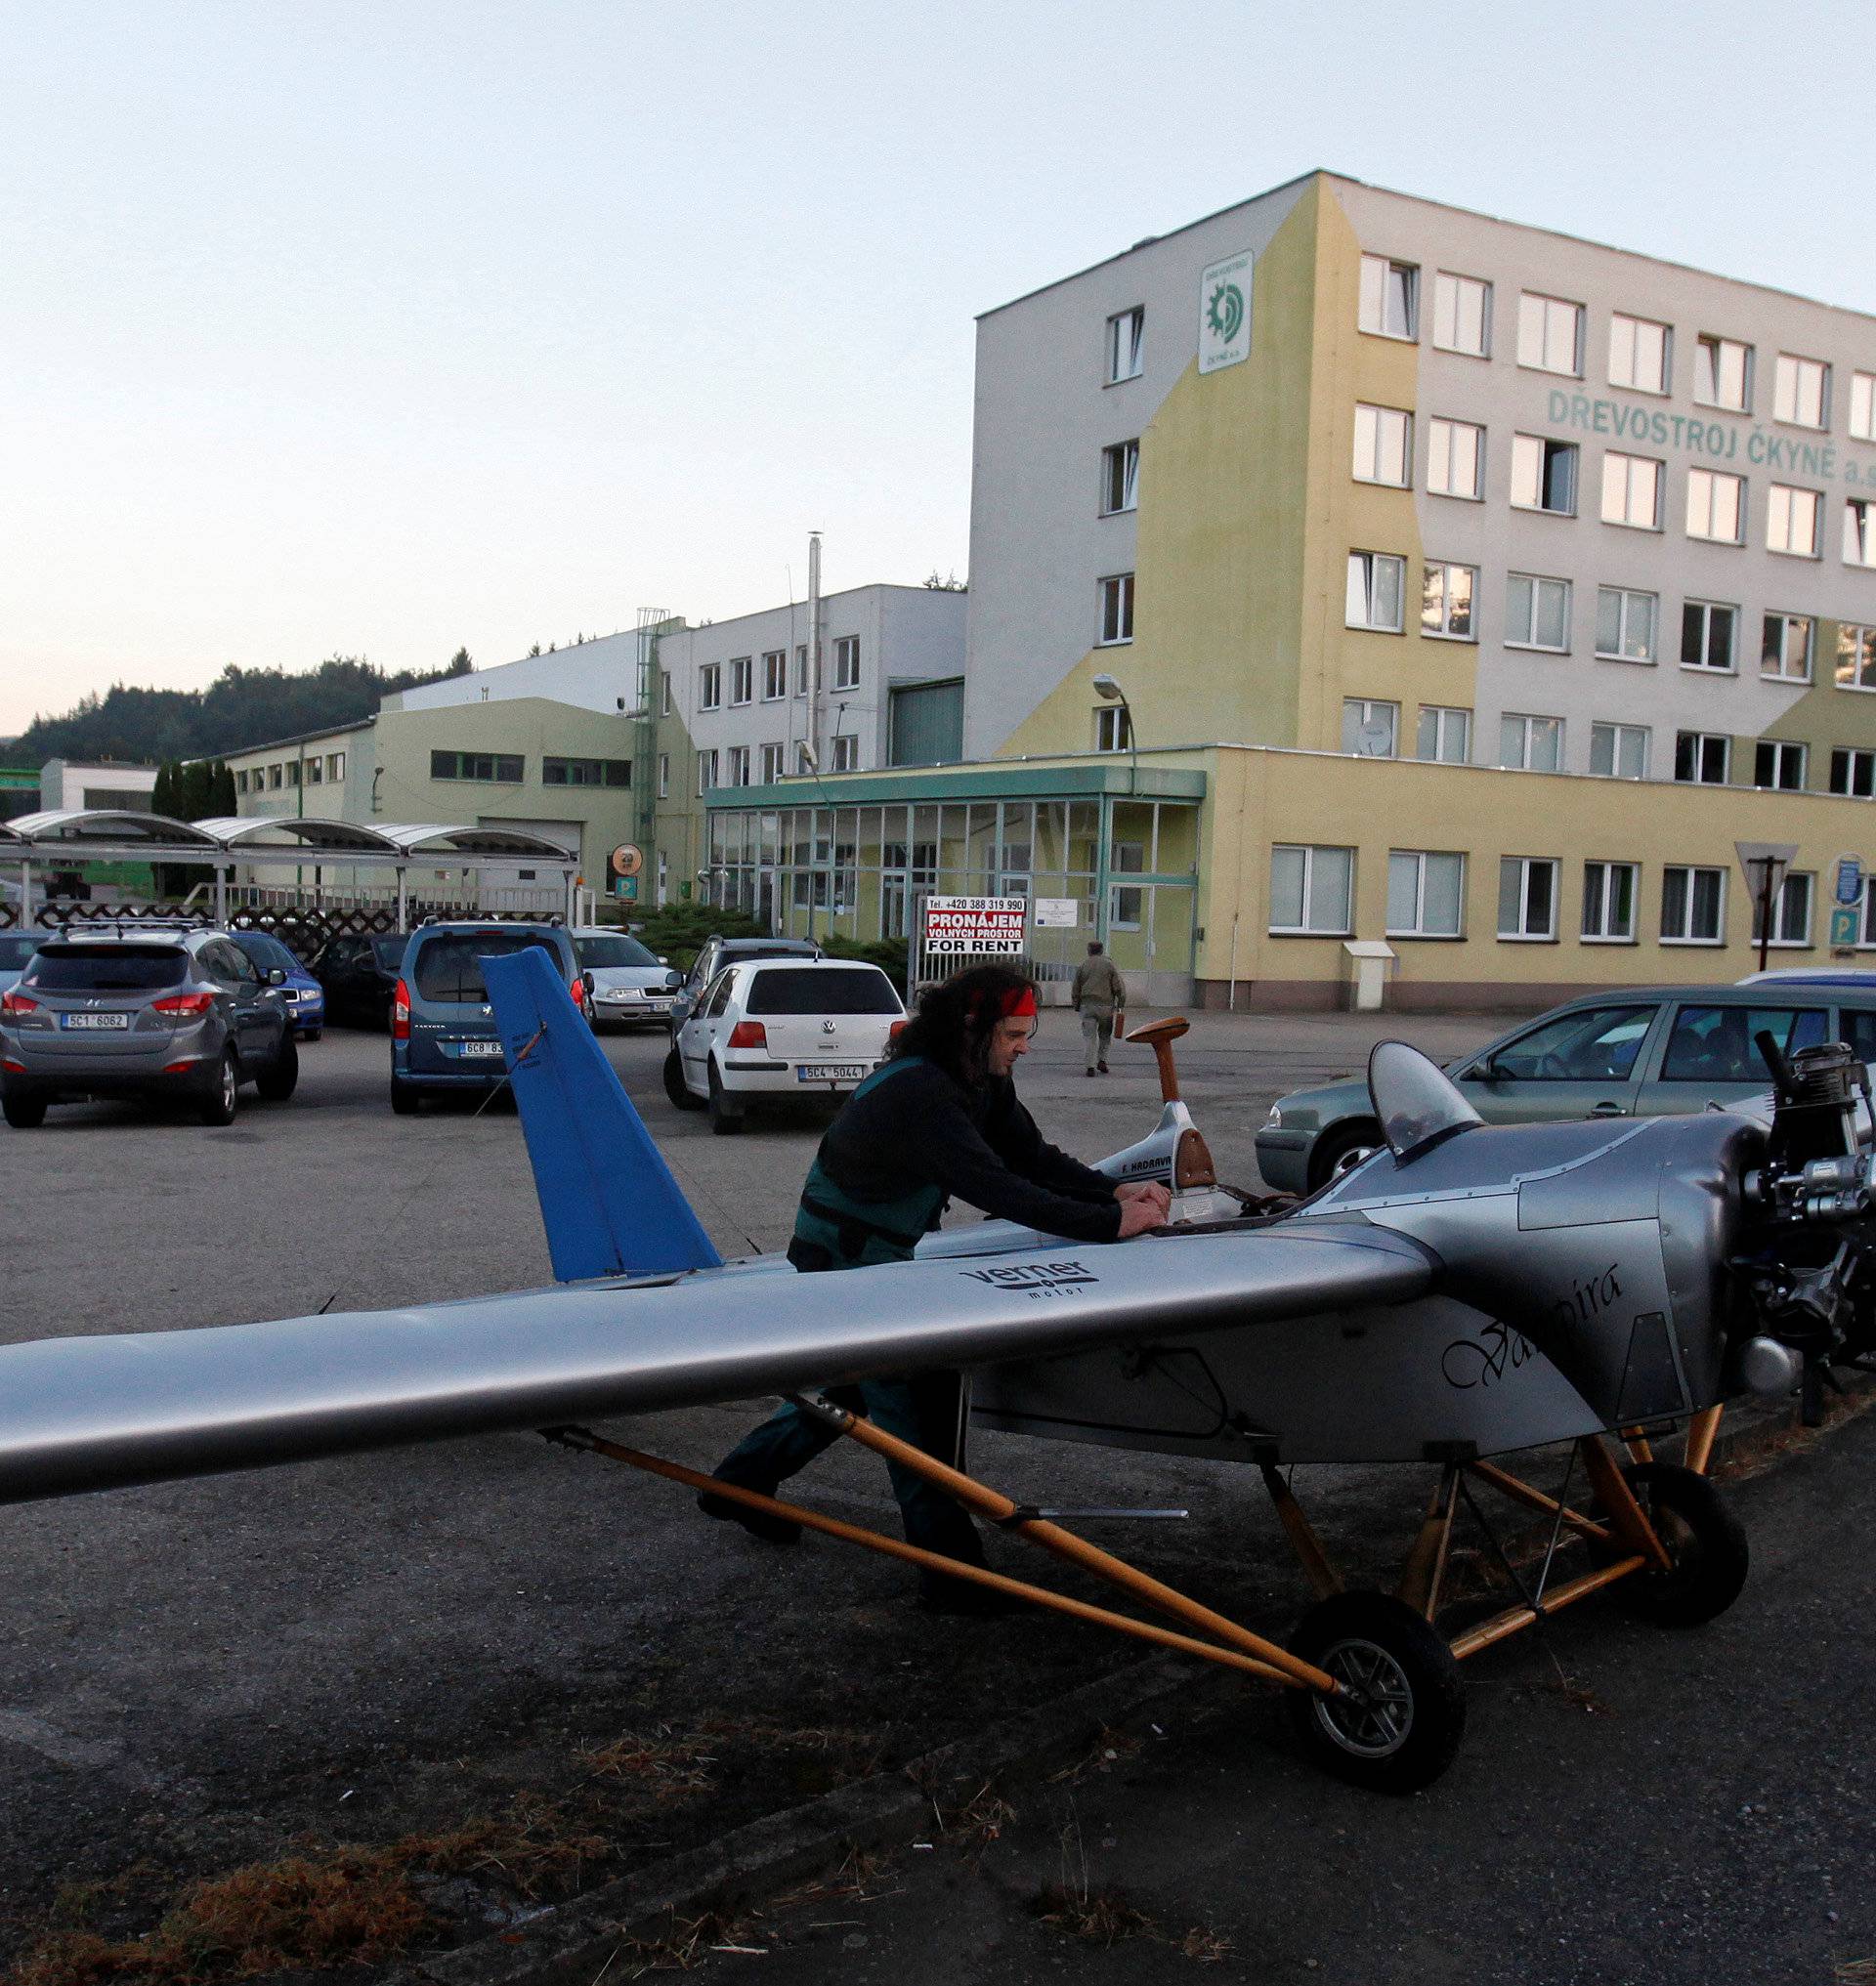 Aviator Frantisek Hadrava parks Vampira, an ultralight plane based on the U.S.-design of light planes called Mini-Max, near the town of Ckyne